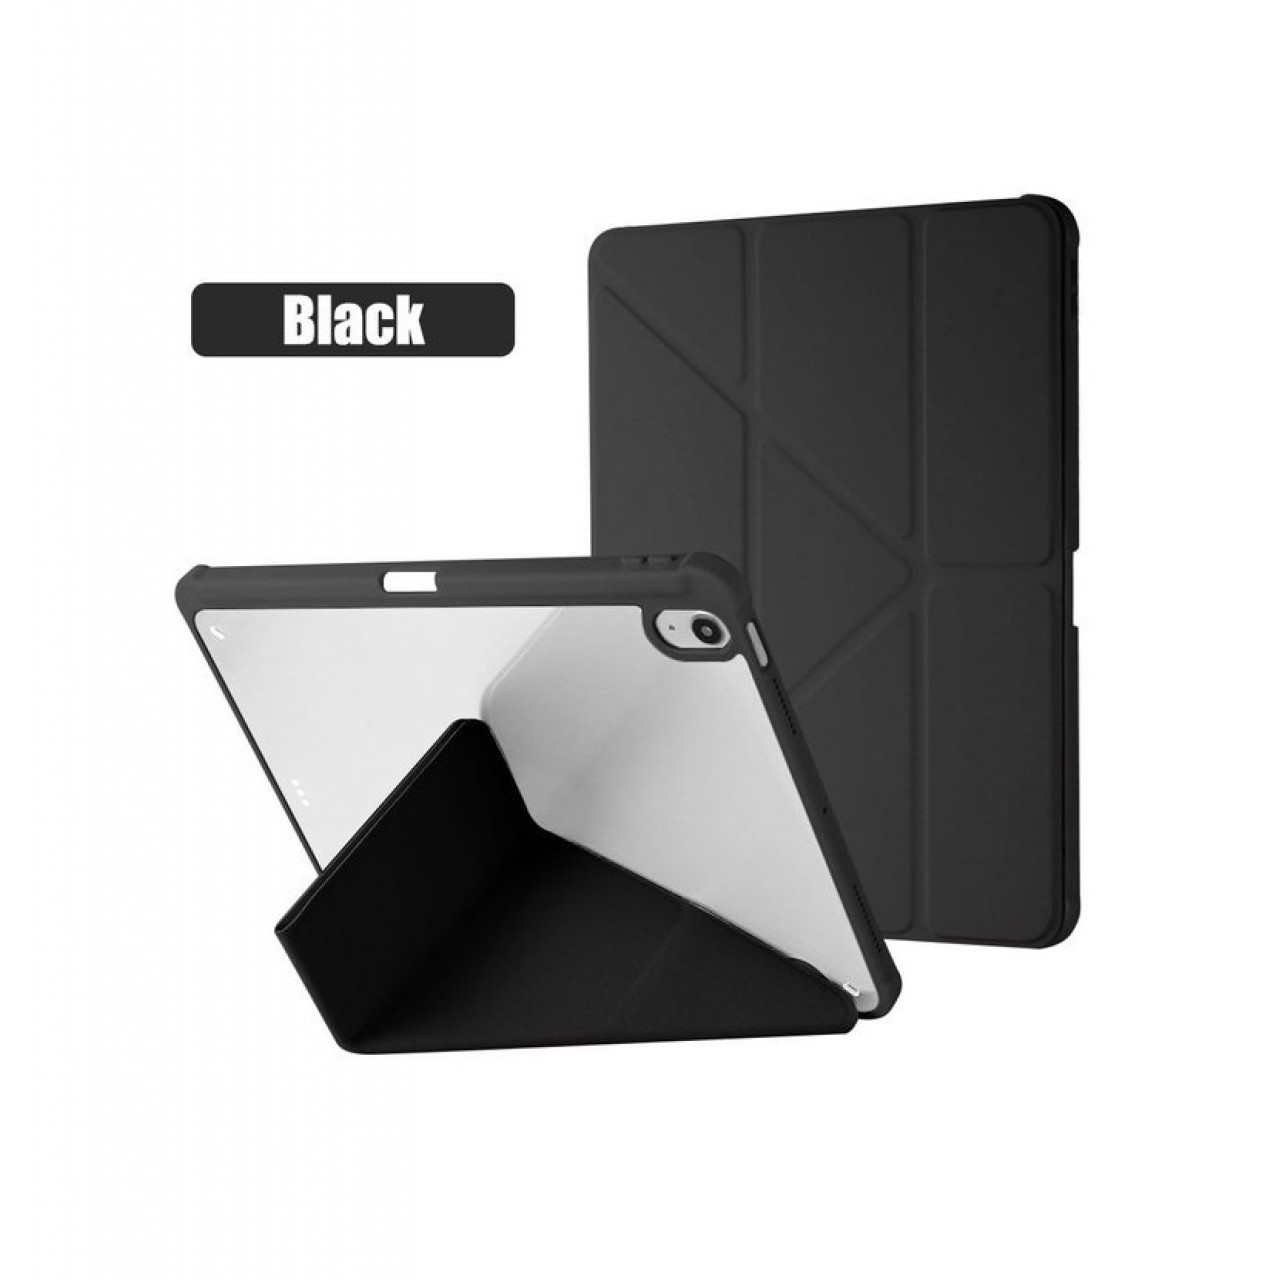 Θήκη Τάμπλετ Μαγνητική Apple iPad pro 11 inch 18-20-21-22 με Προστασία Κάμερας και Θέση για Γραφίδα - Black